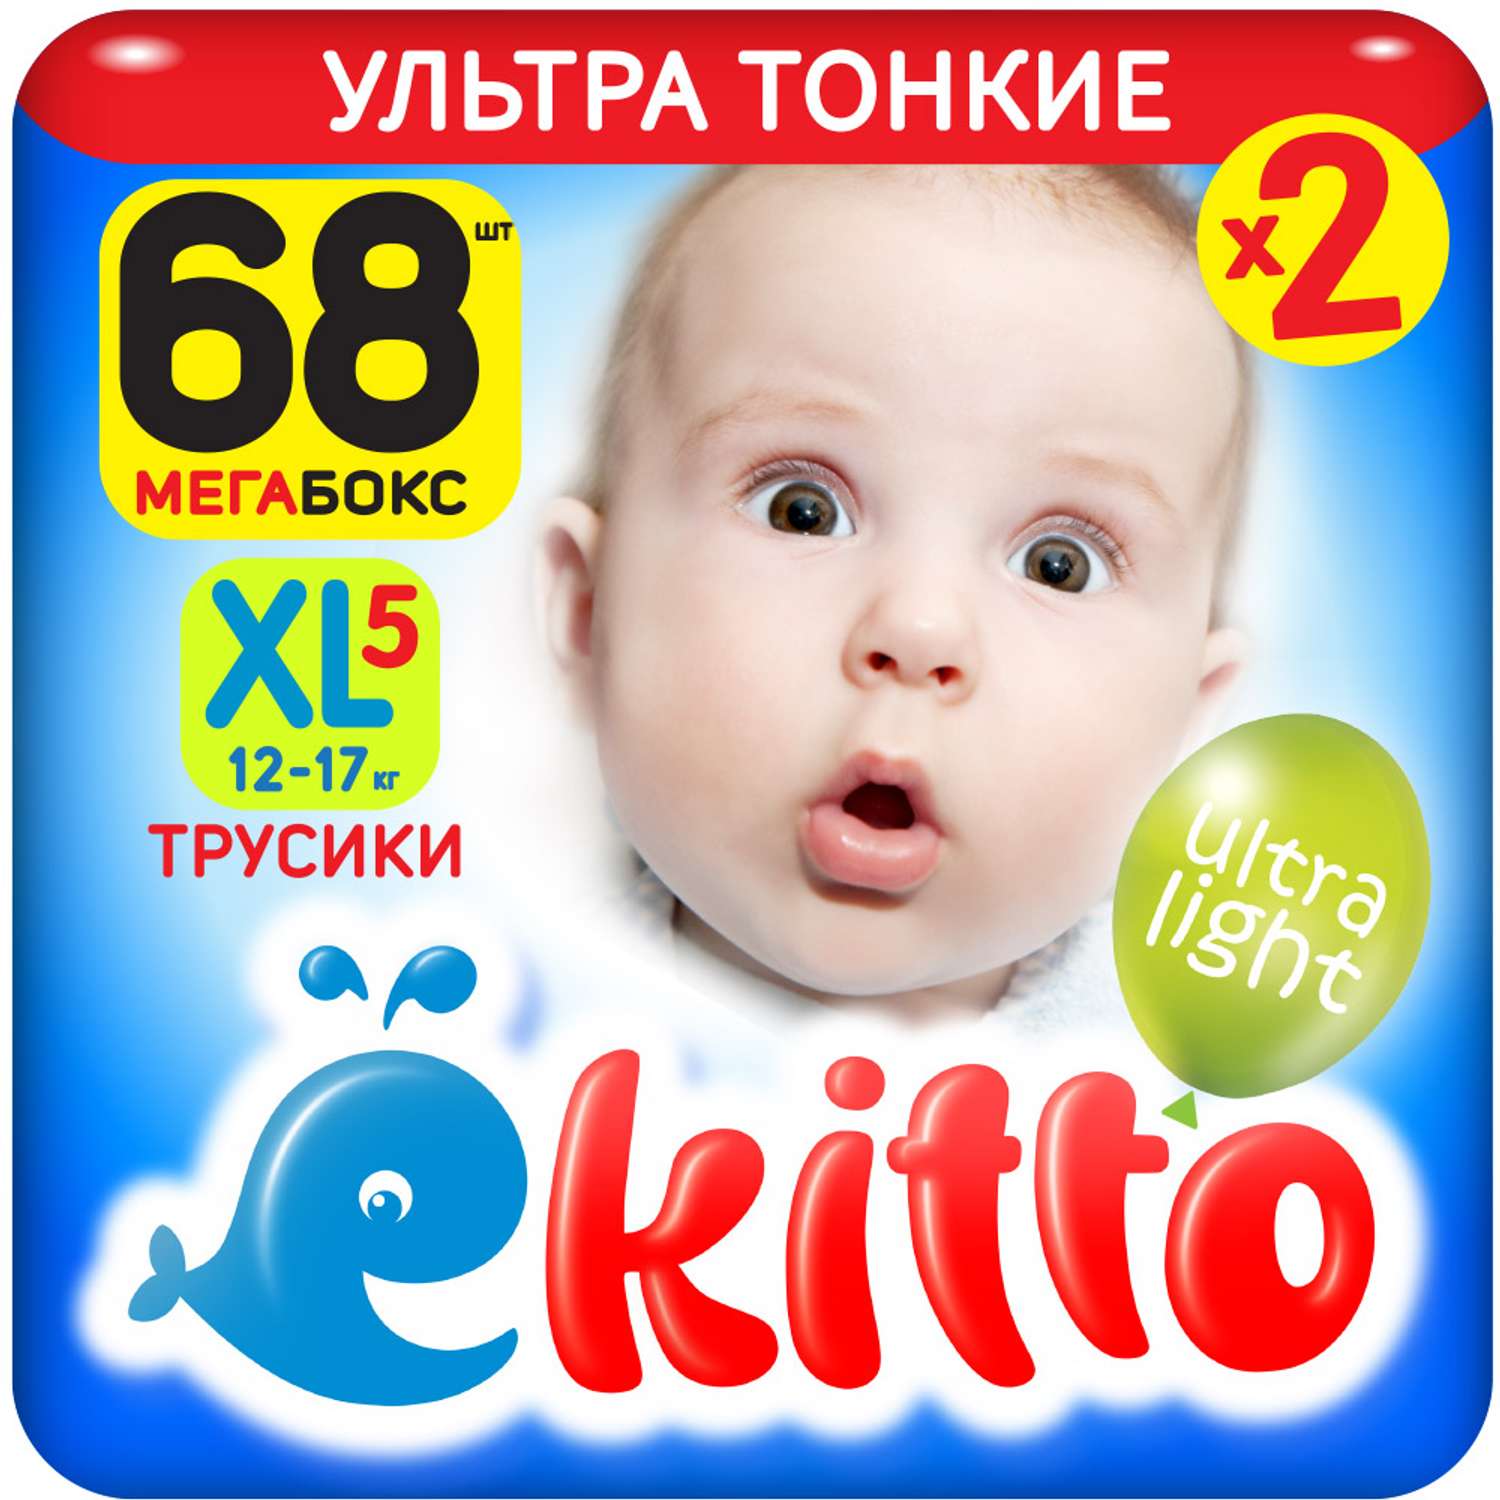 Подгузники-трусики Ekitto 5 размер XL для детей от 12-17 кг 68 шт премиум ультра тонкие - фото 1